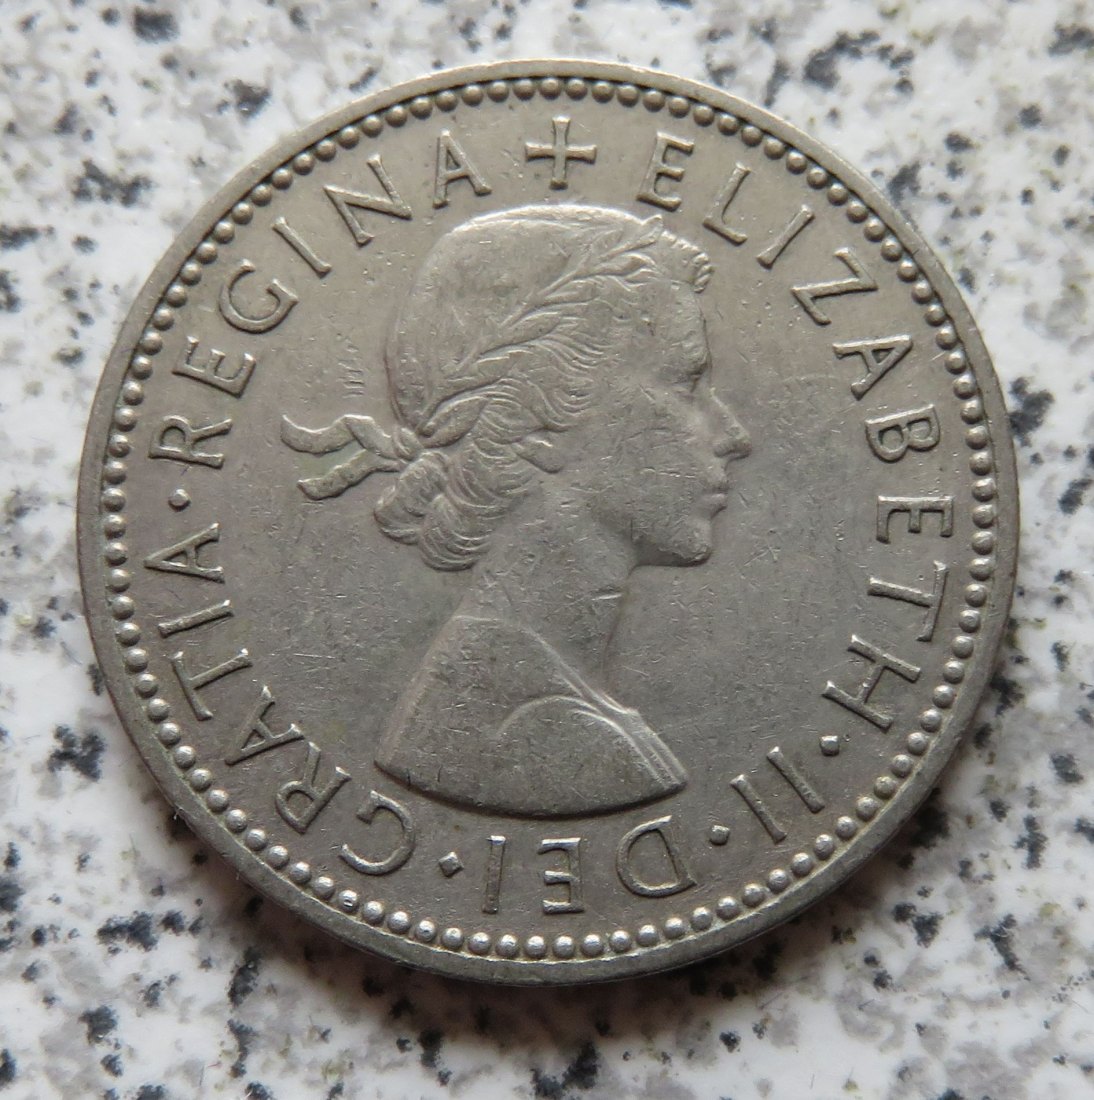  Großbritannien 1 Shilling 1956, Schottisch (4)   